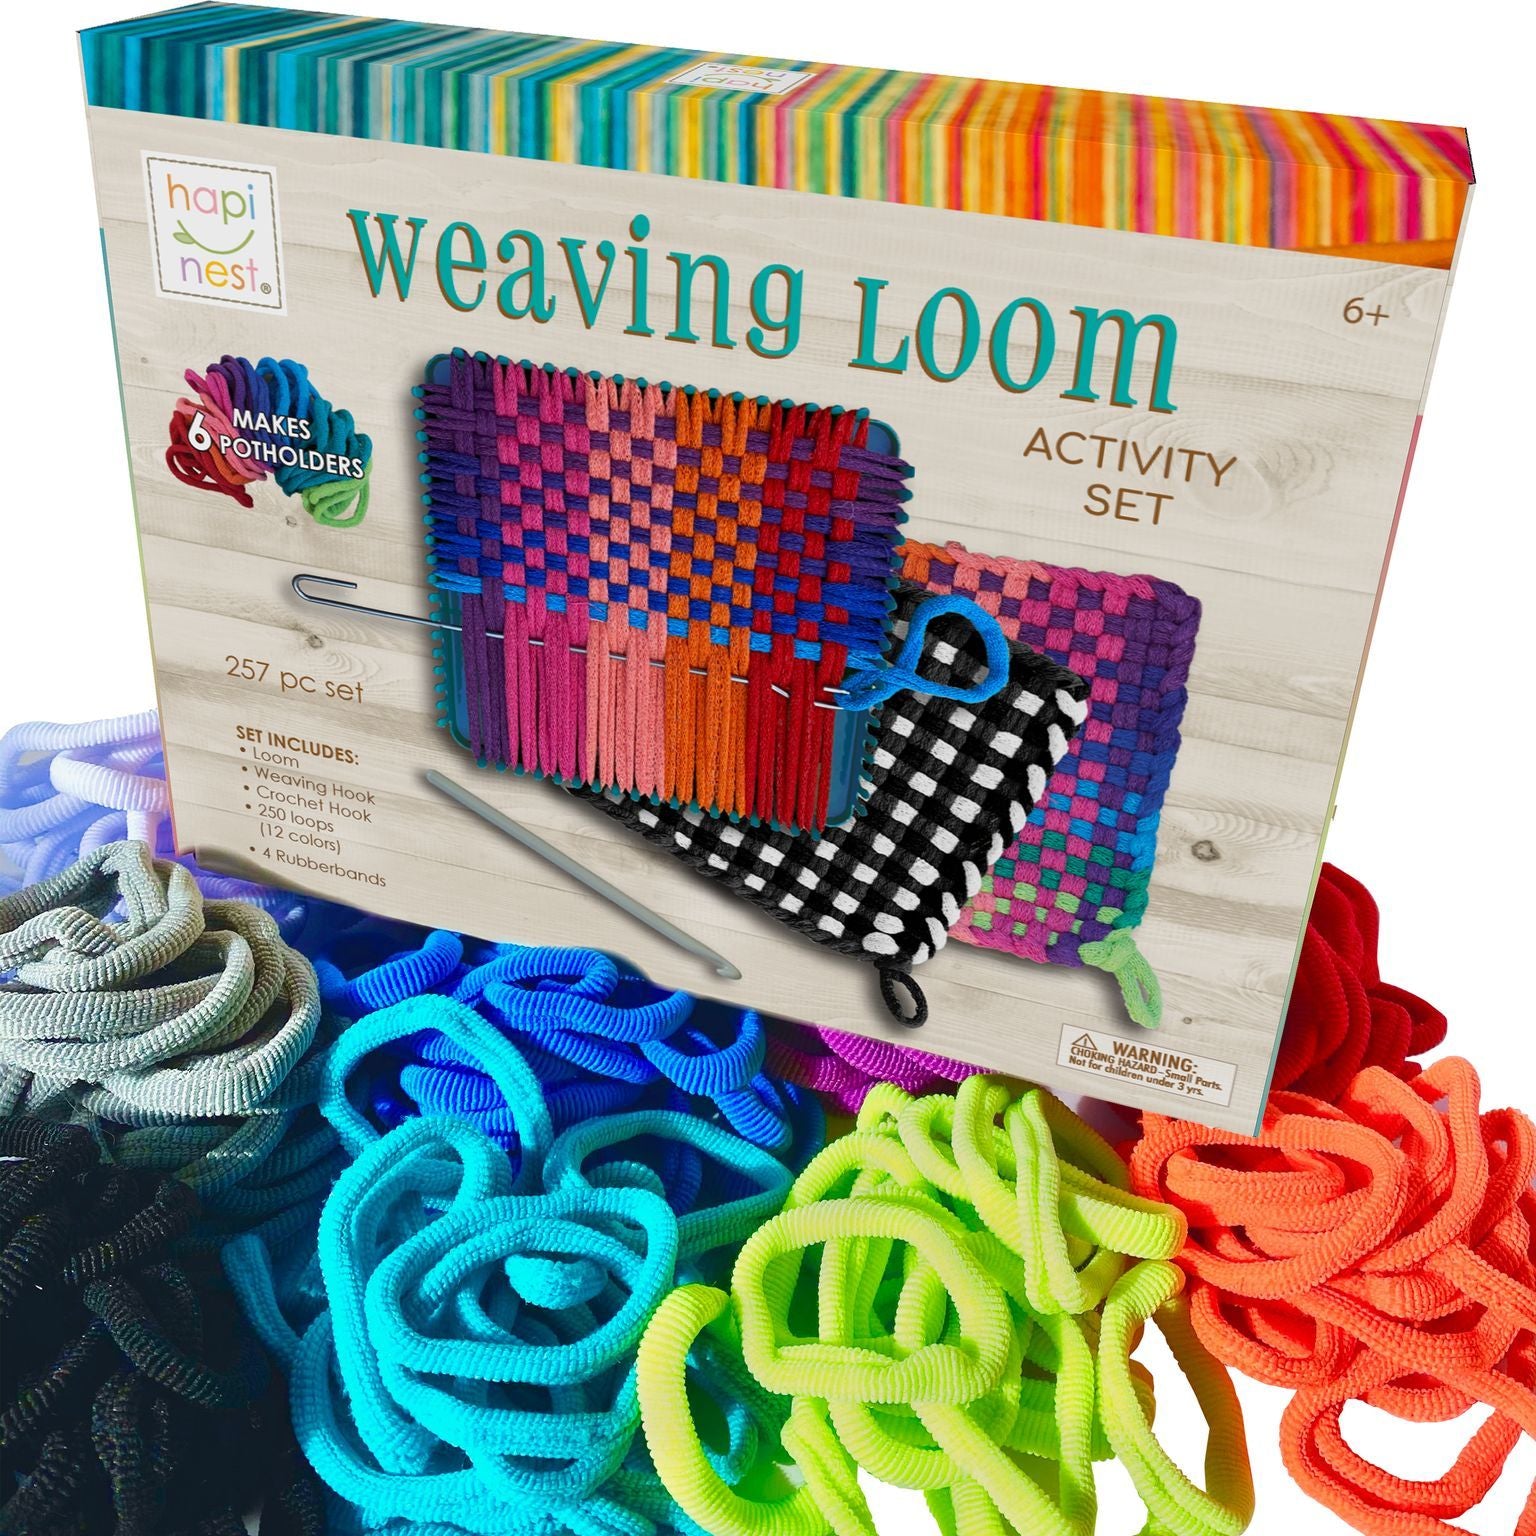 Make Your Own Potholders Weaving Loom Kit